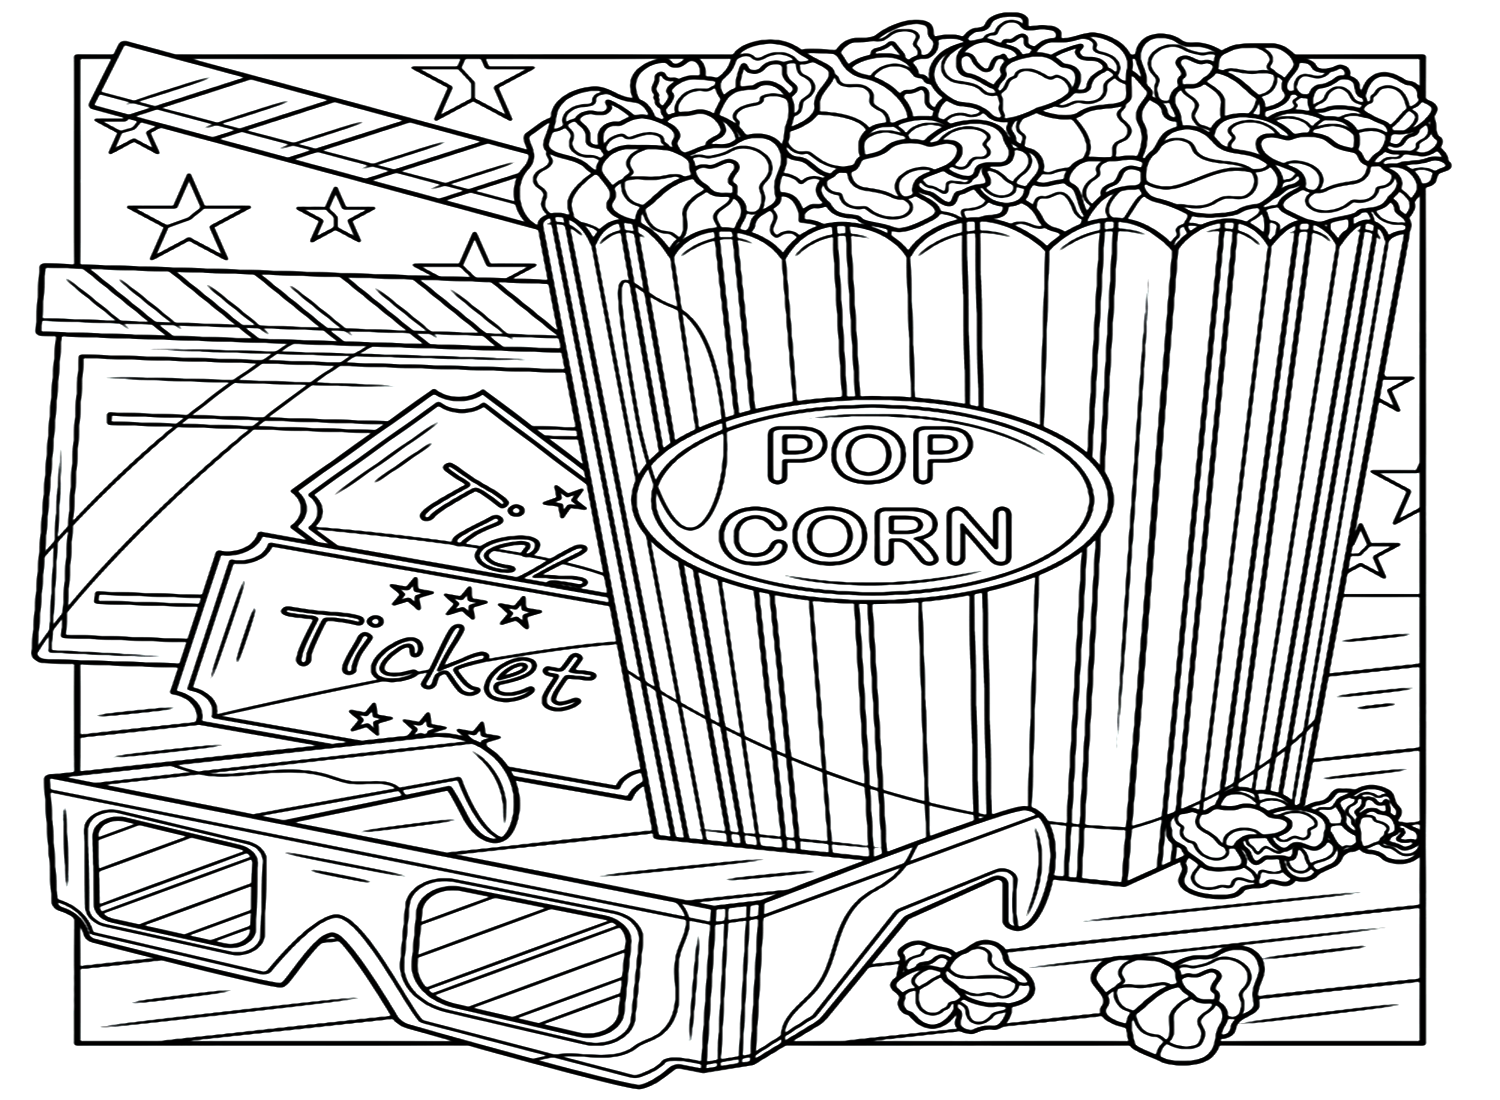 Página para colorear de caja de palomitas de maíz imprimible de Popcorn